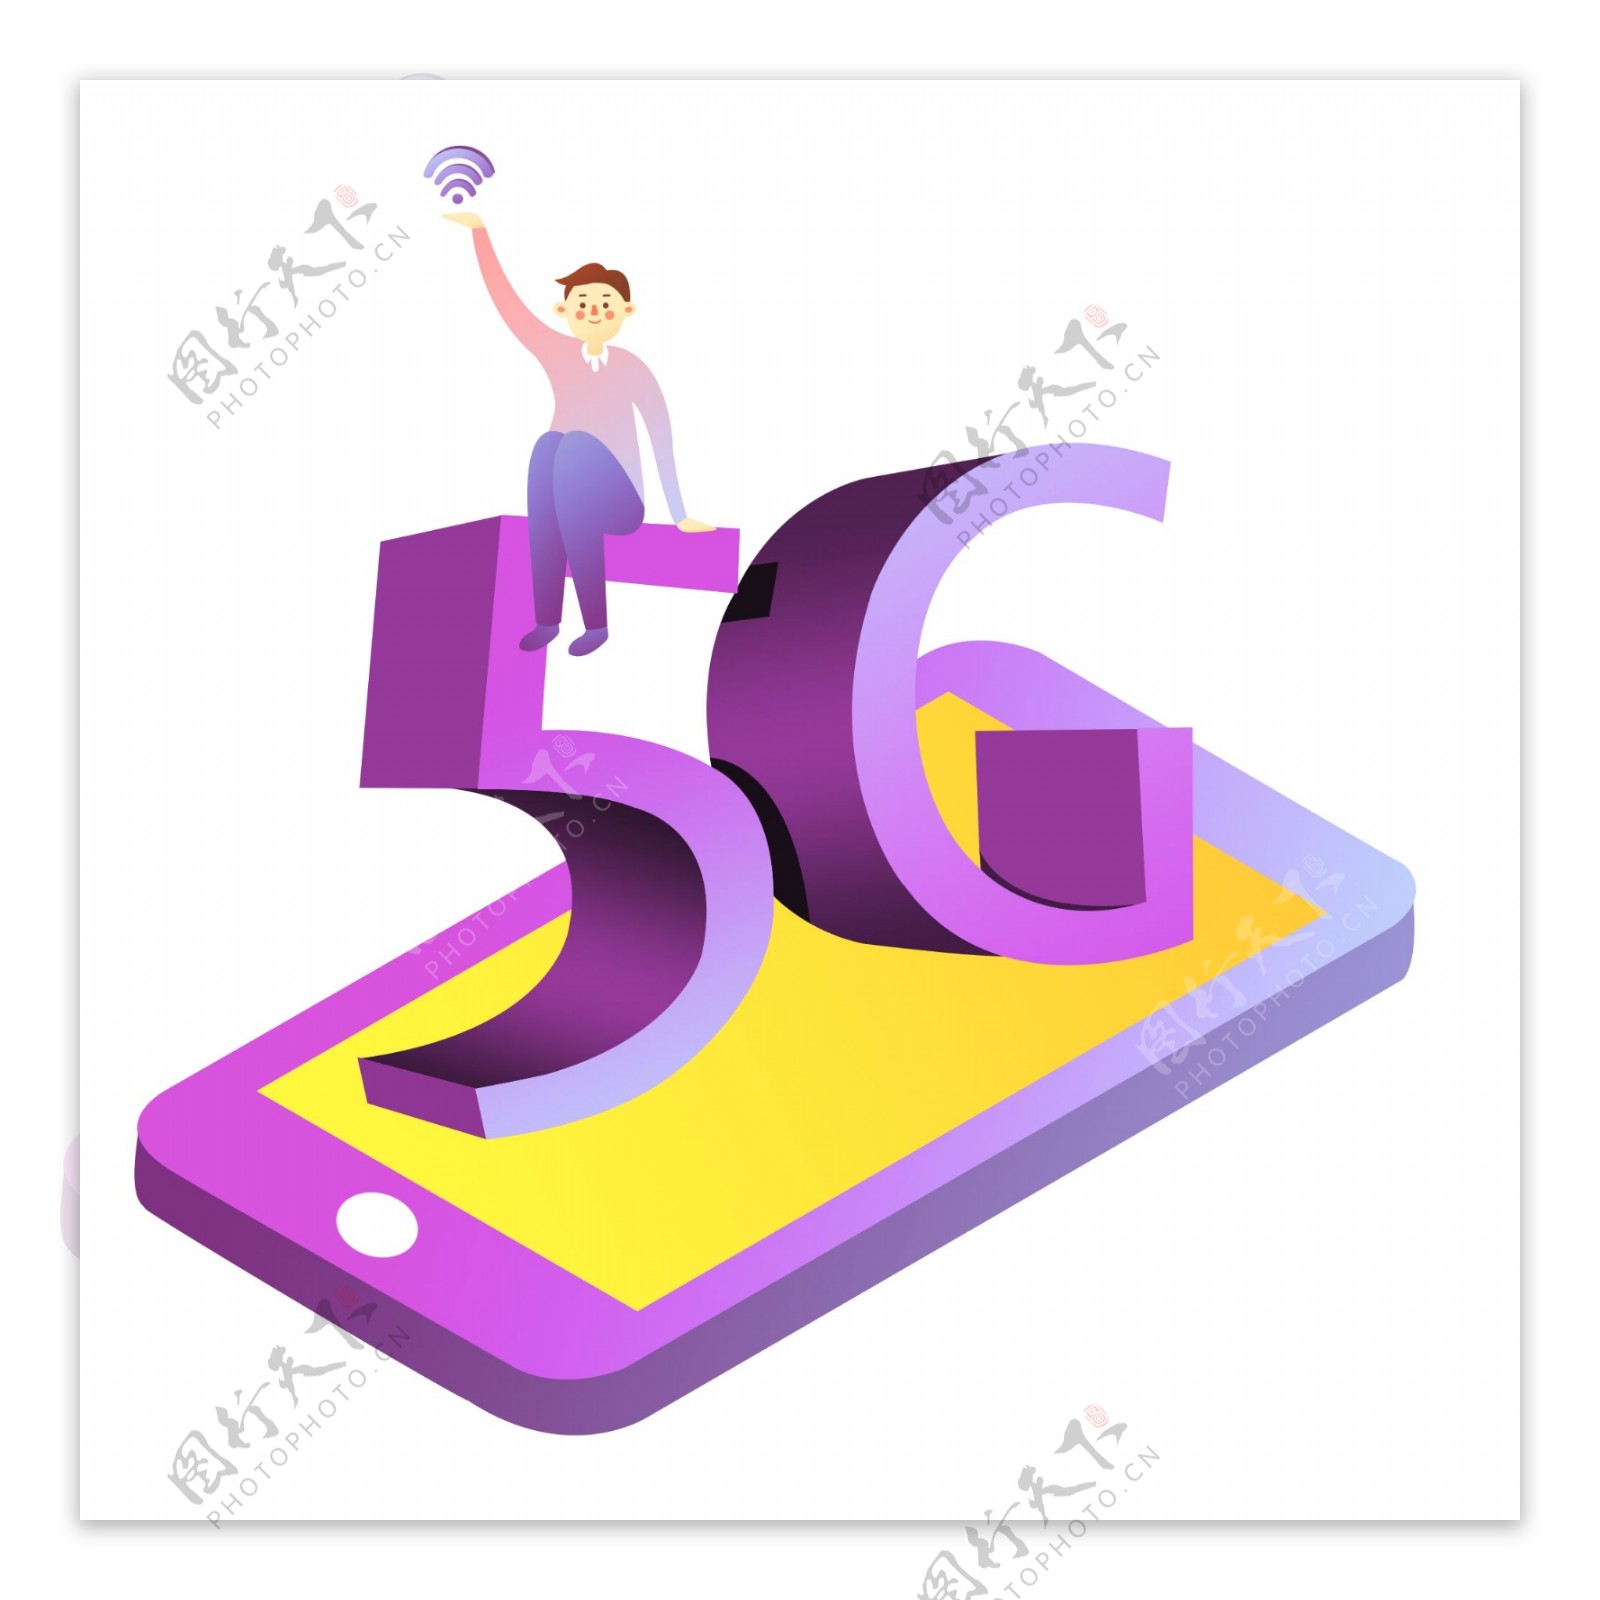 5G无线网络时代科技